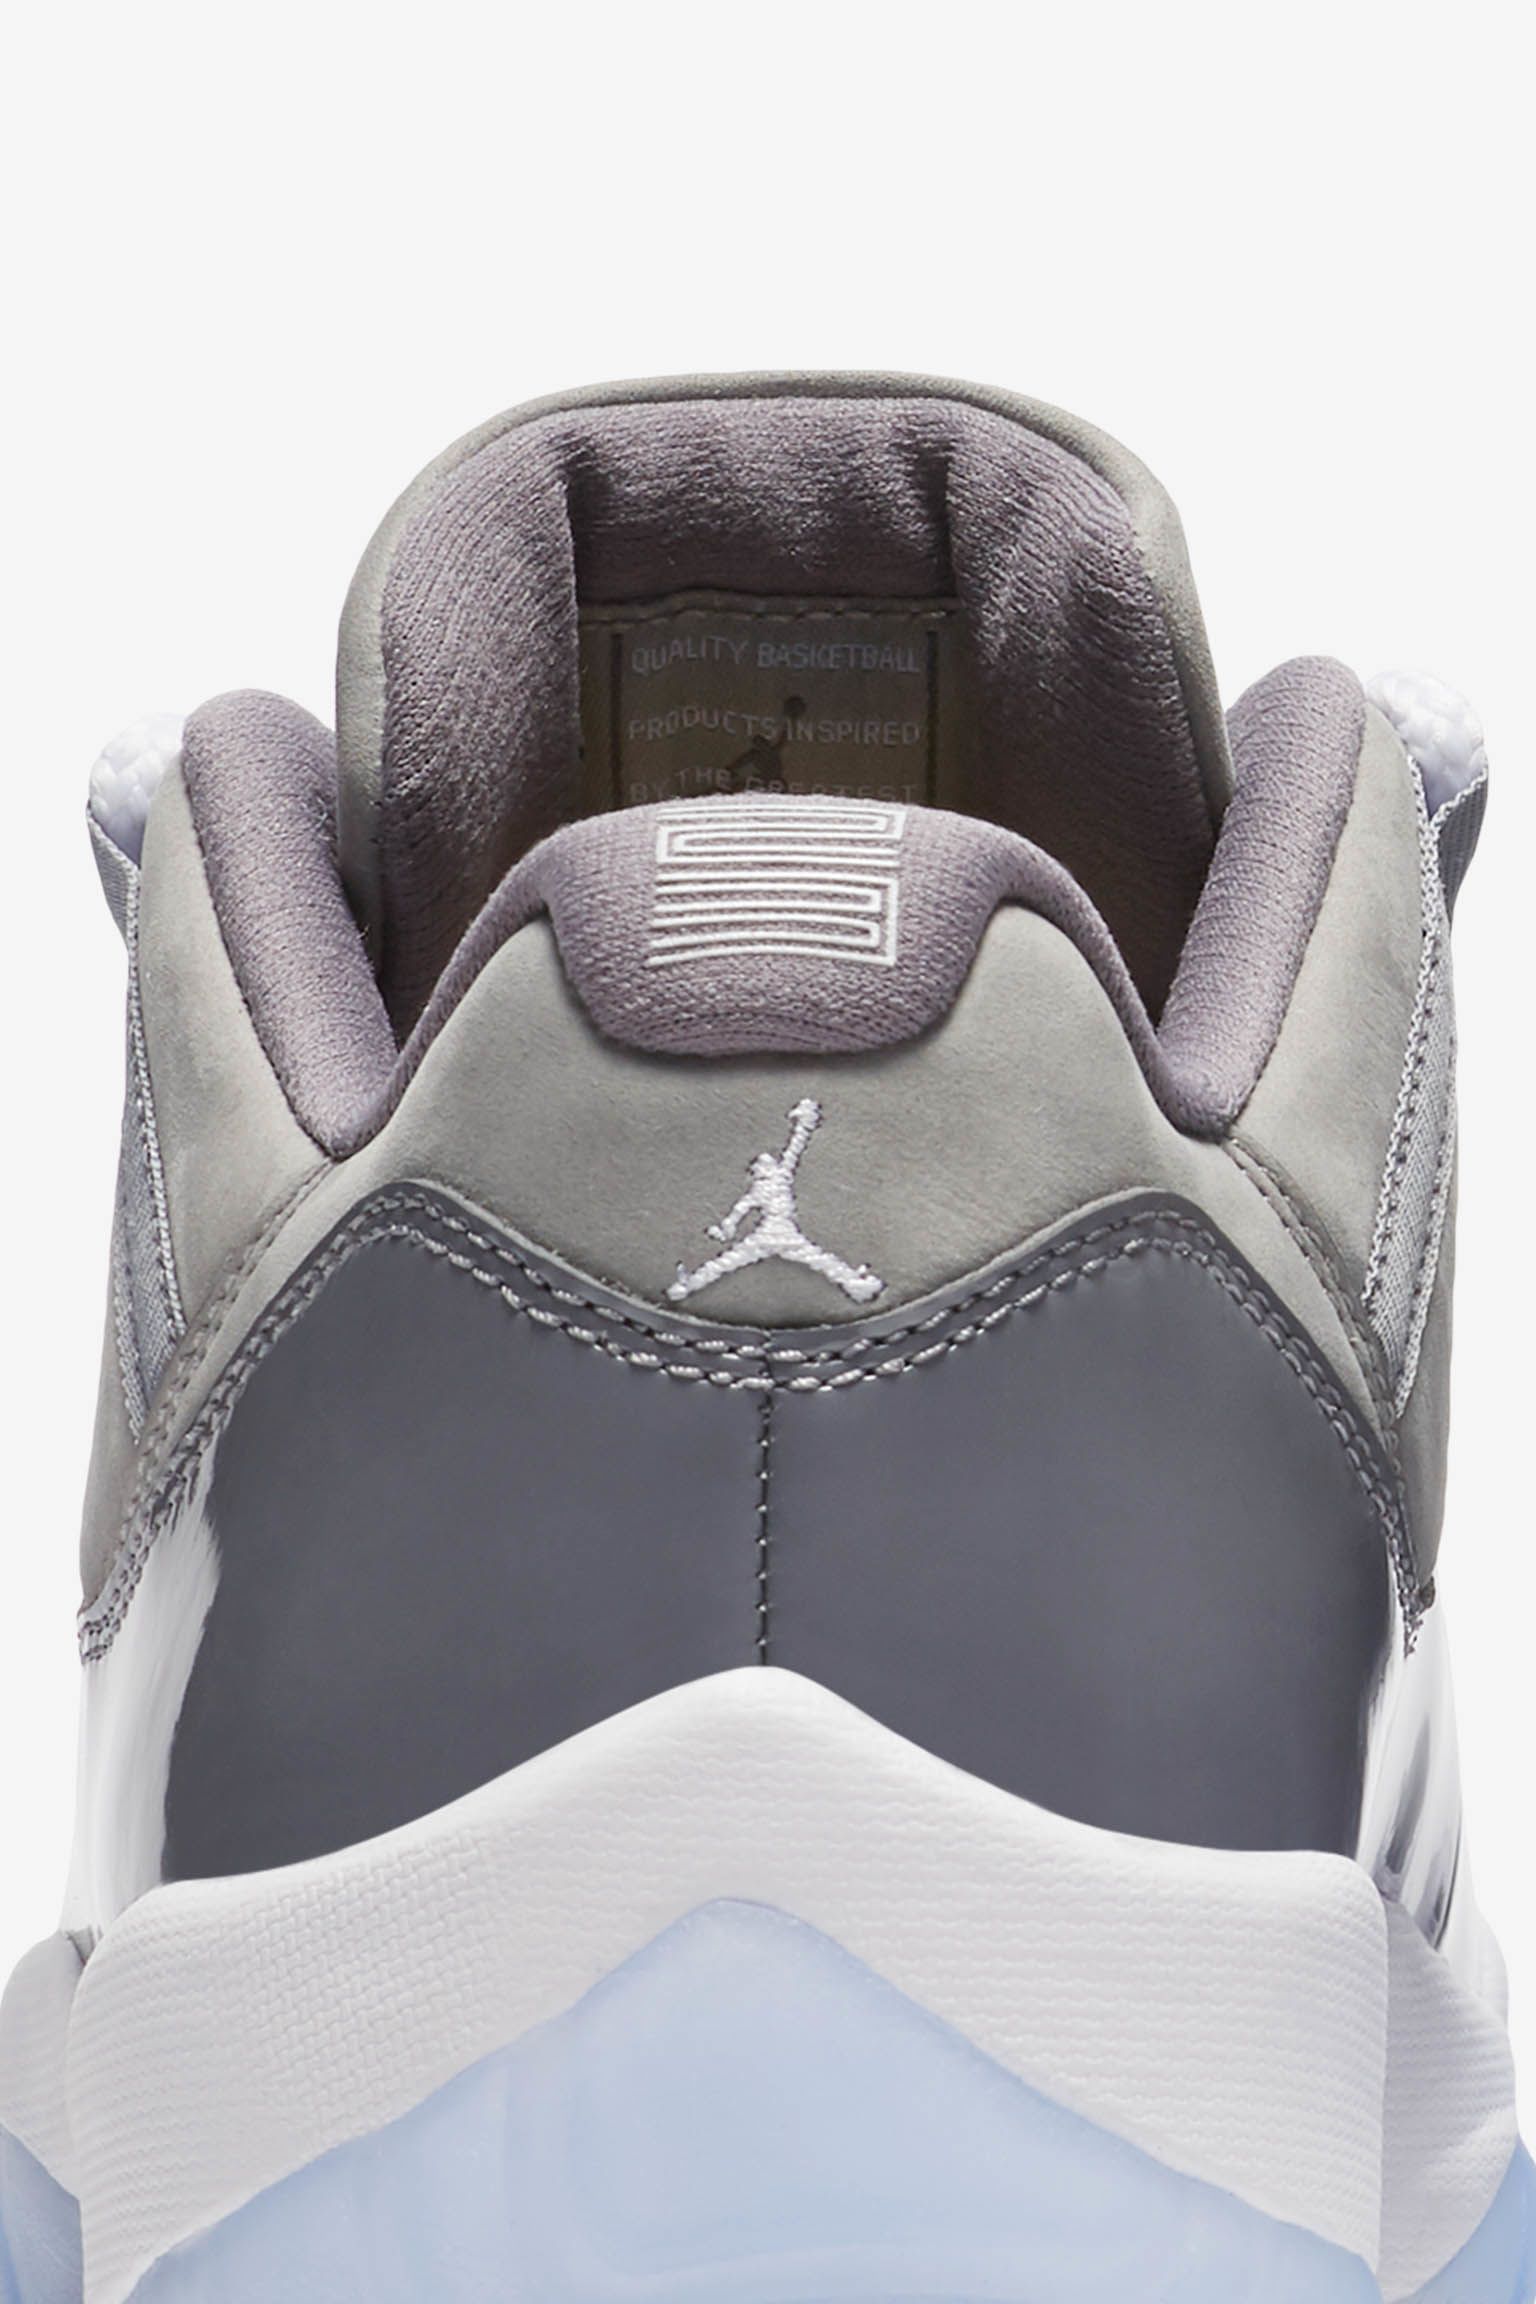 Air Jordan 11 Low 'Cool Grey' Release Date. Nike SNKRS